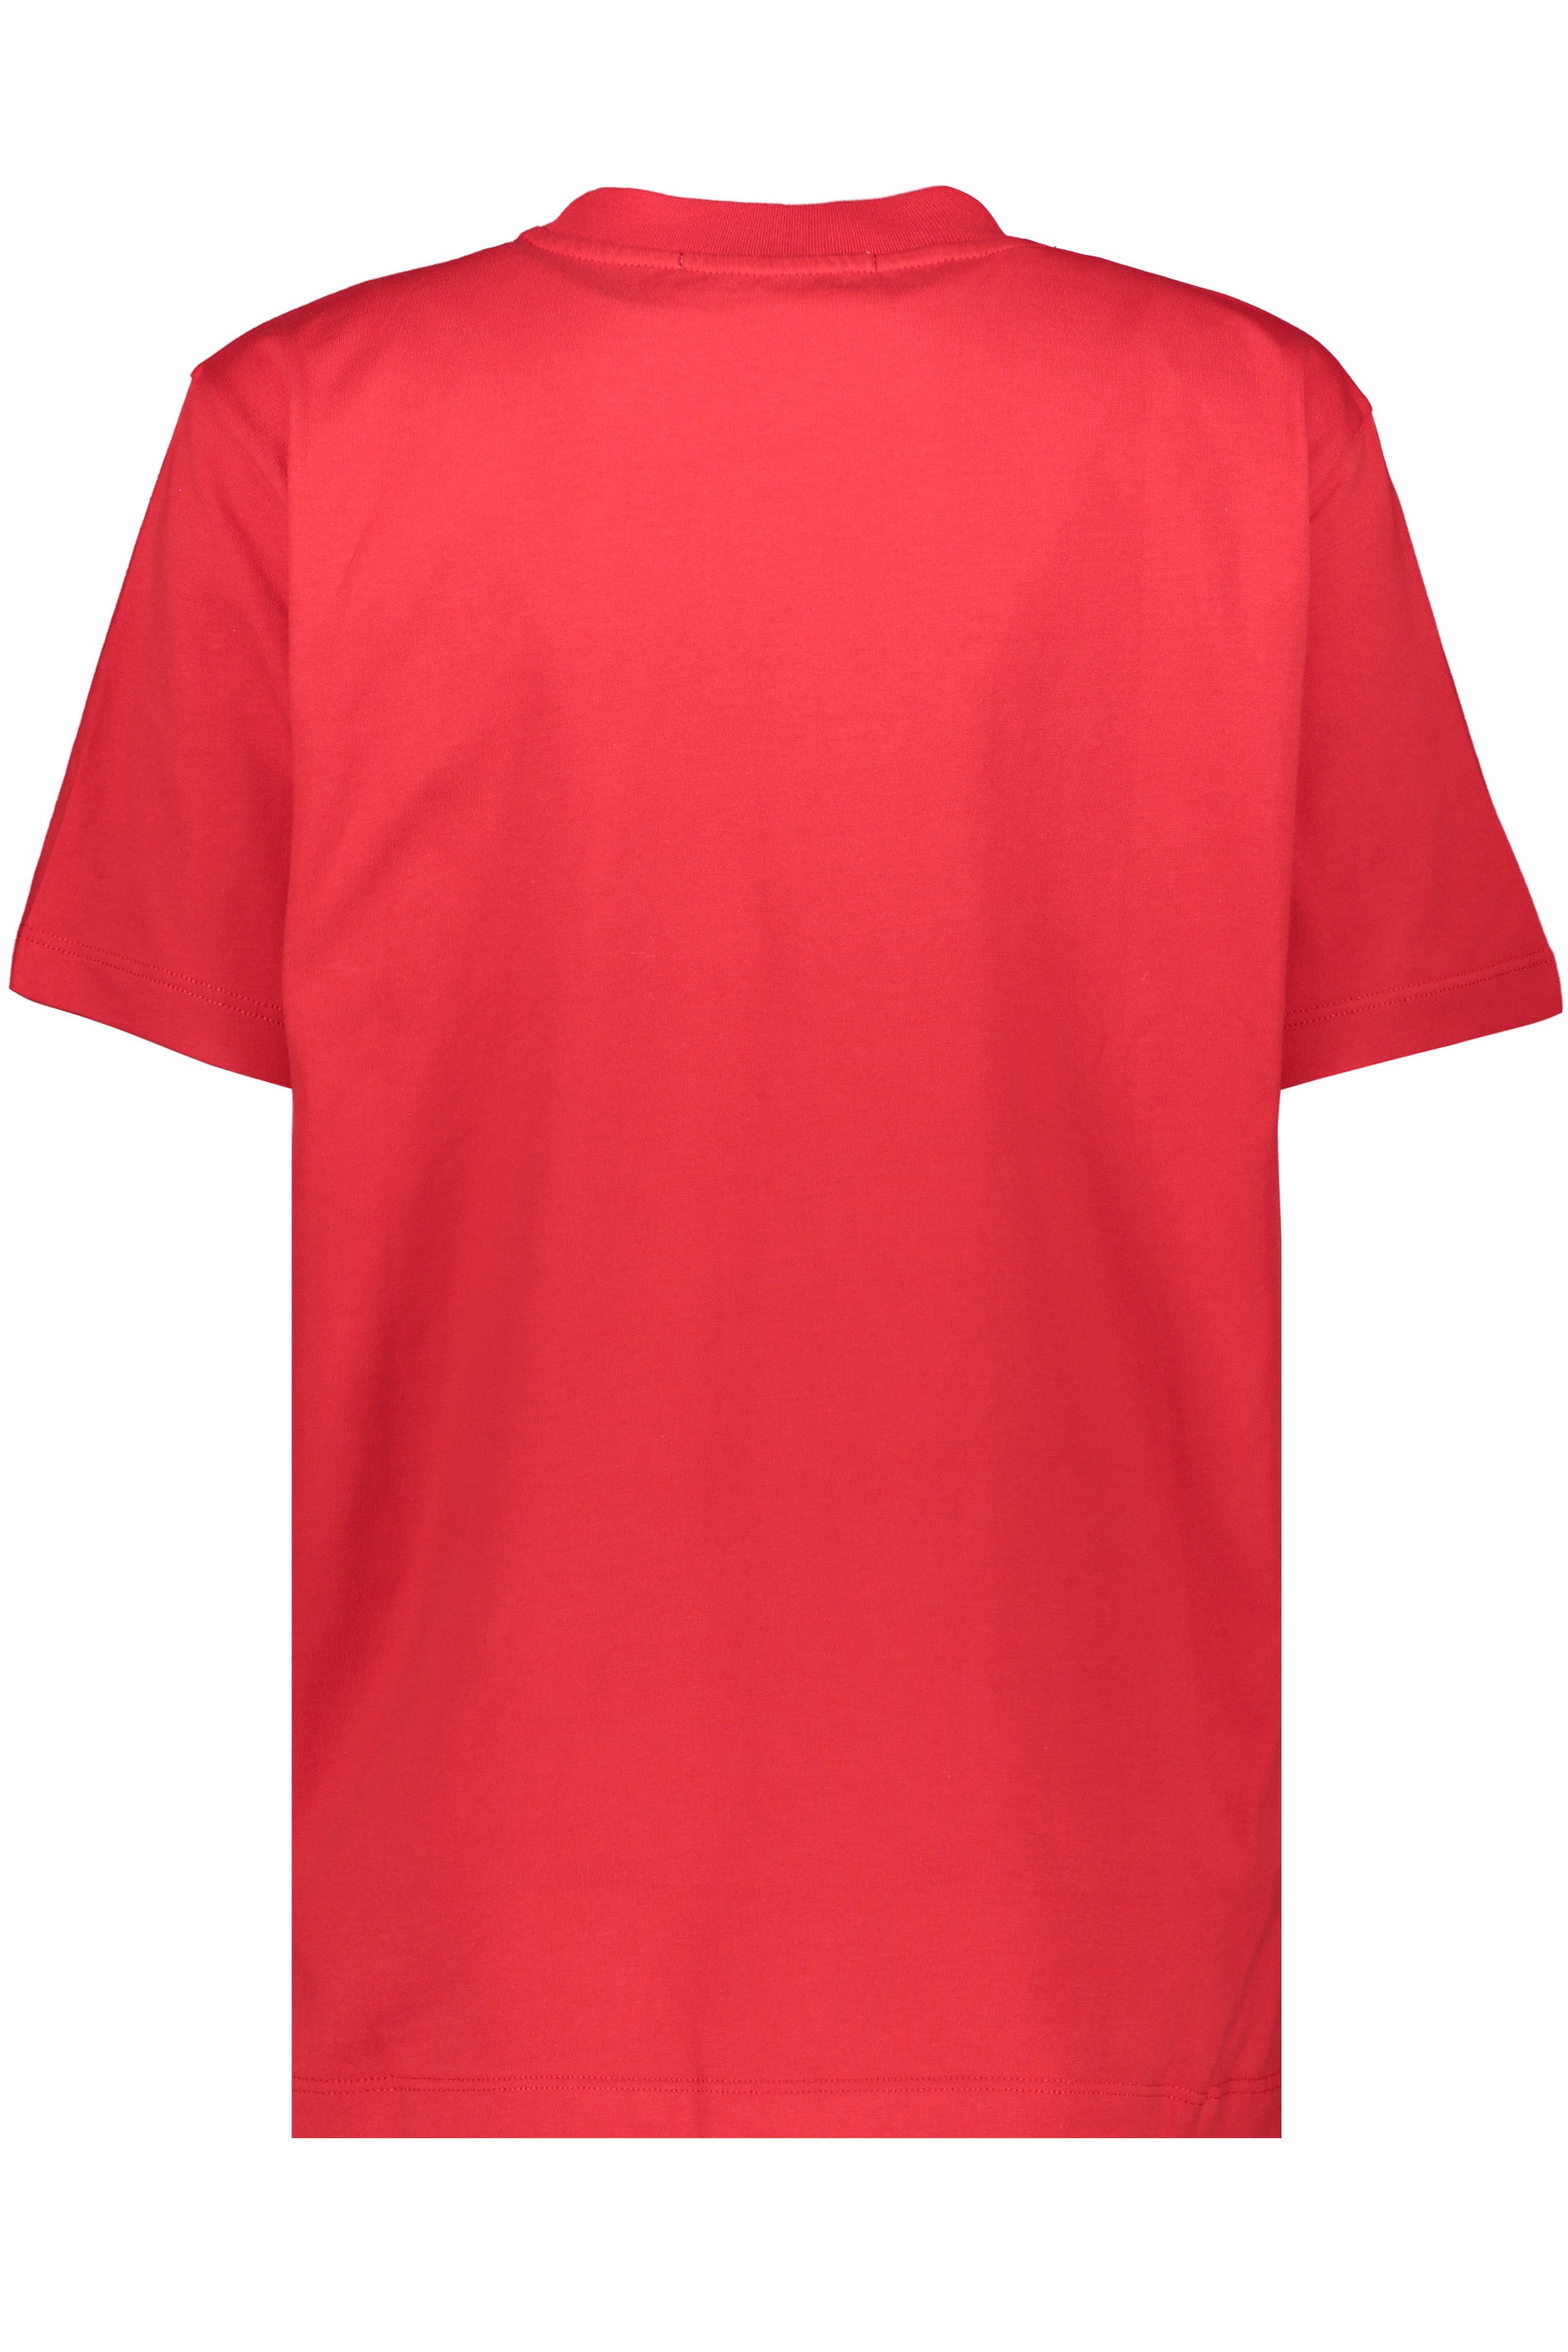 Cotton T-shirt-MSGM-OUTLET-SALE-ARCHIVIST